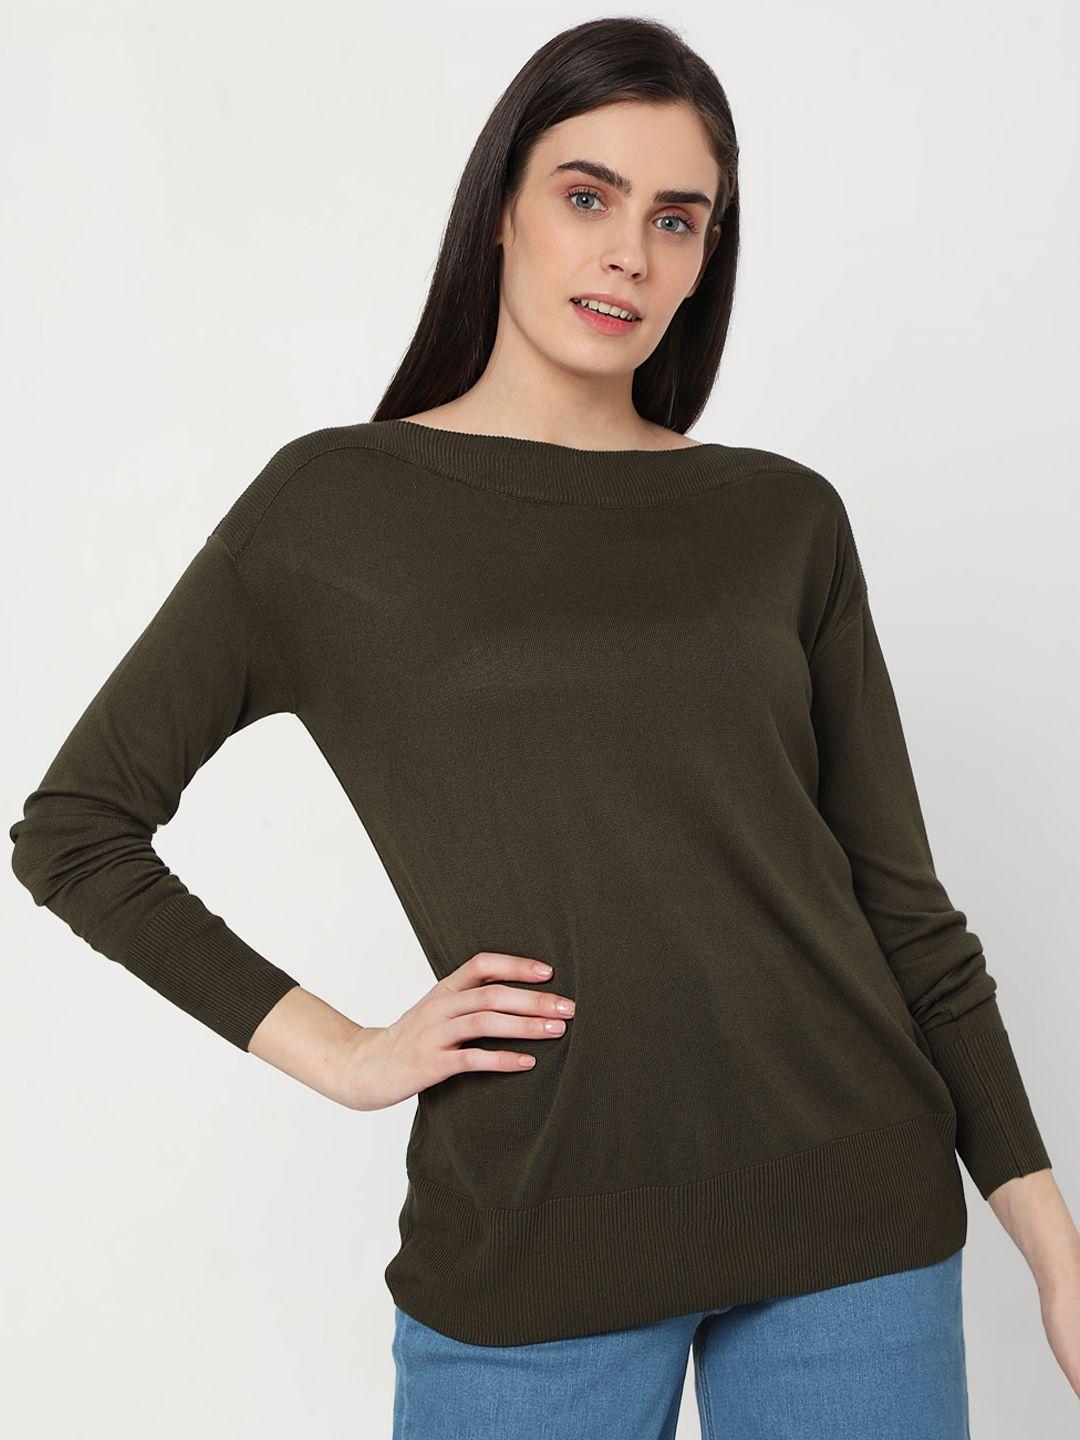 Vero Moda Women Olive Solid Pullover